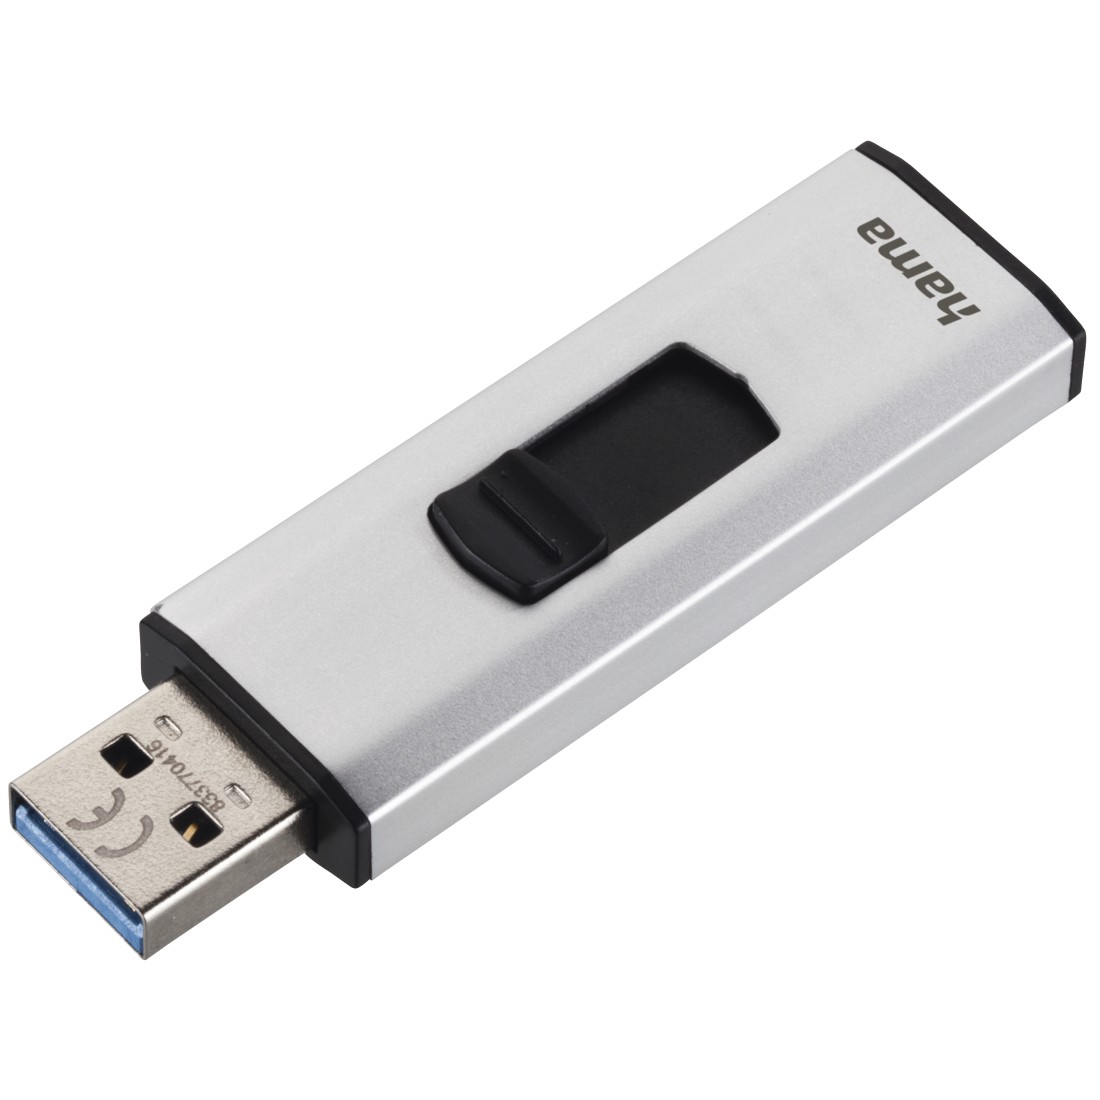 00124182 Hama "4Bizz" USB Stick, USB 3.0, 64 GB, 70 MB/s, silver/black